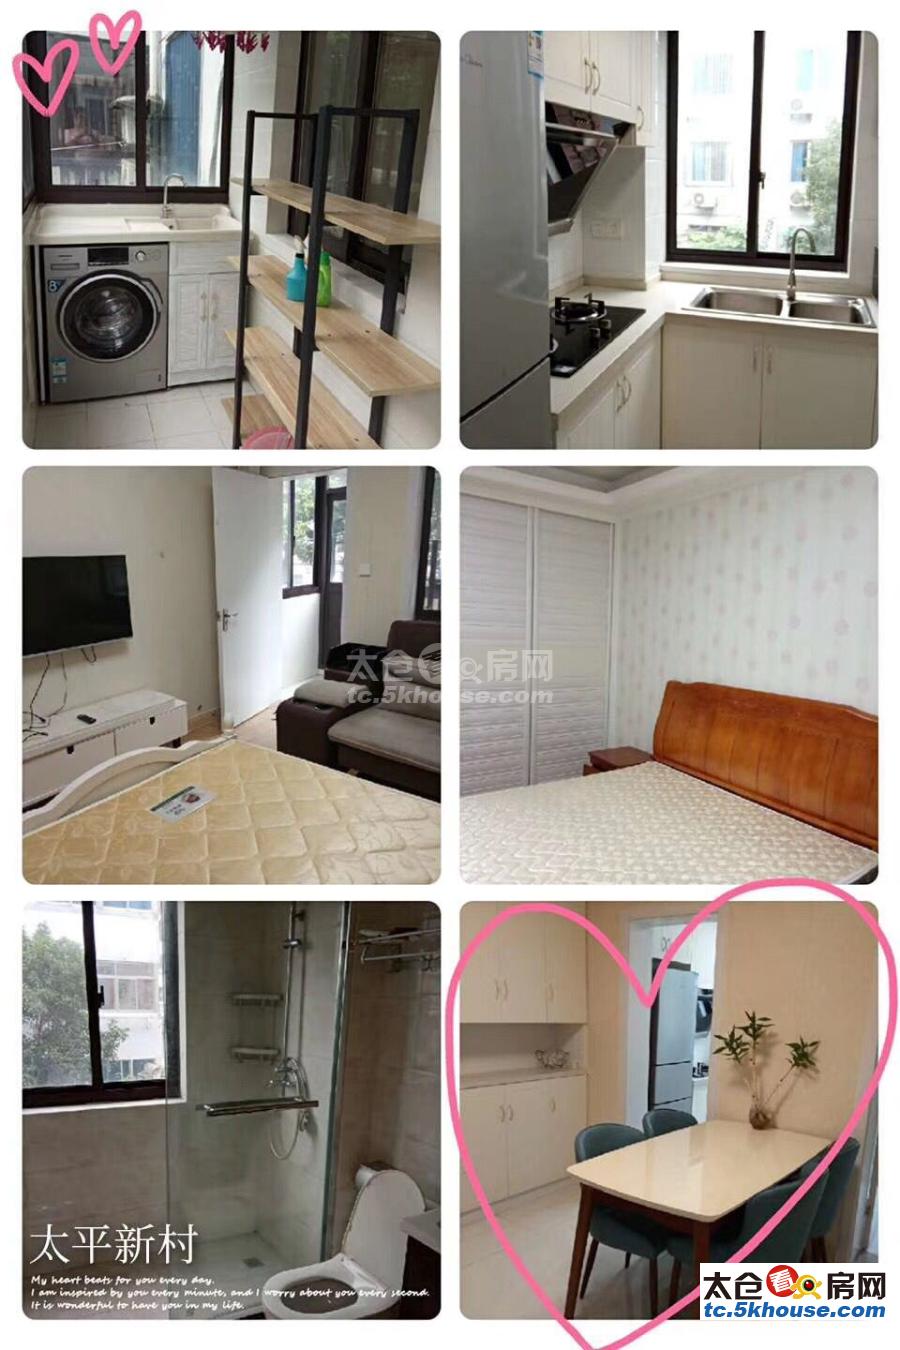 太平新村76平 138万 2室1厅1卫 精装修 低价出售,房主诚售。